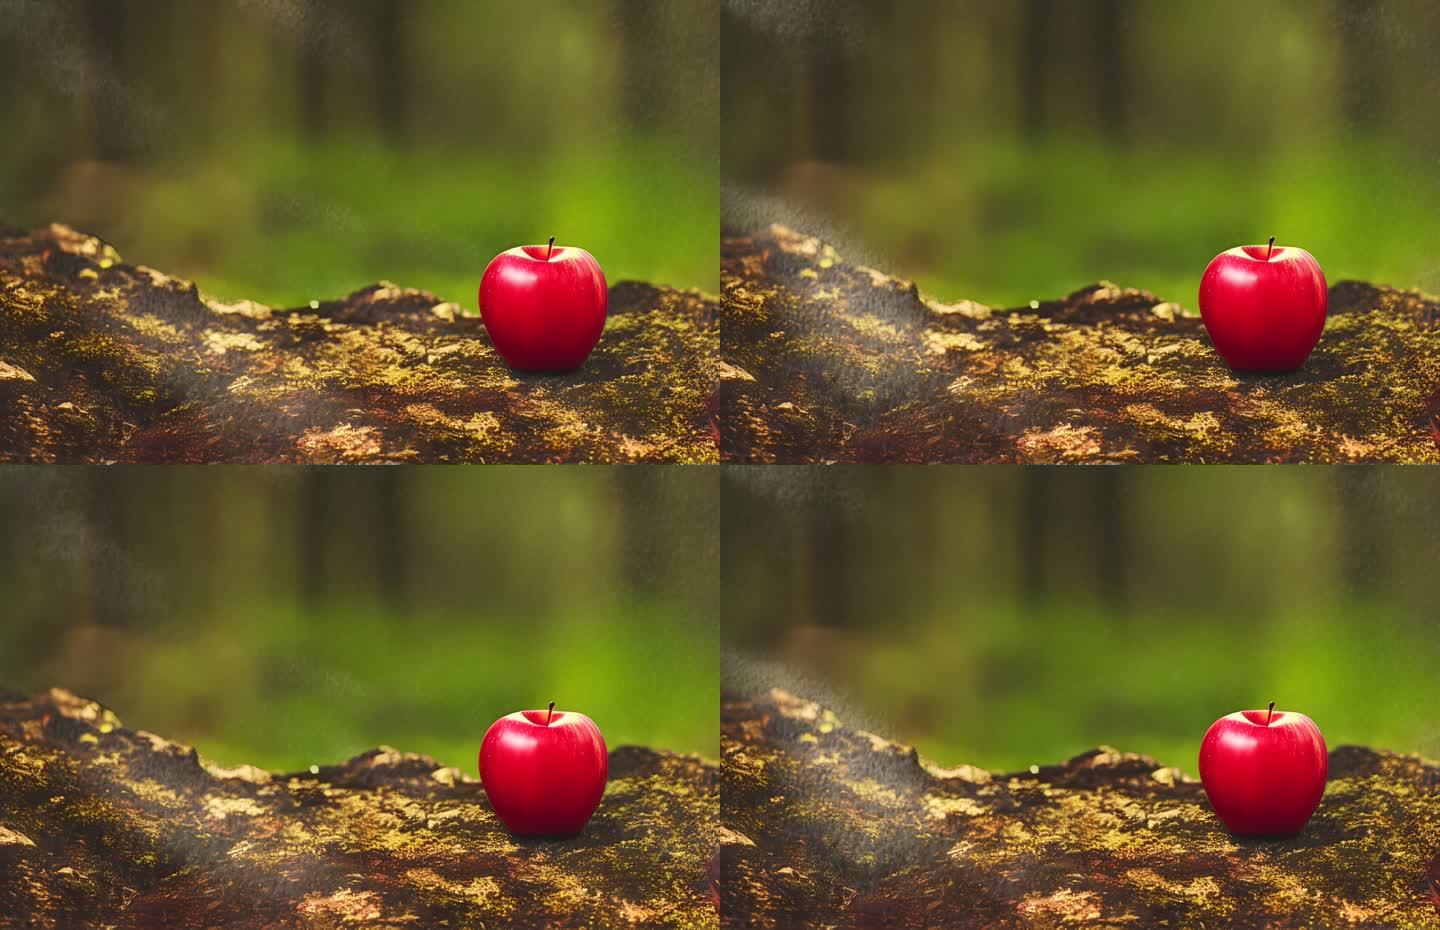 一颗苹果